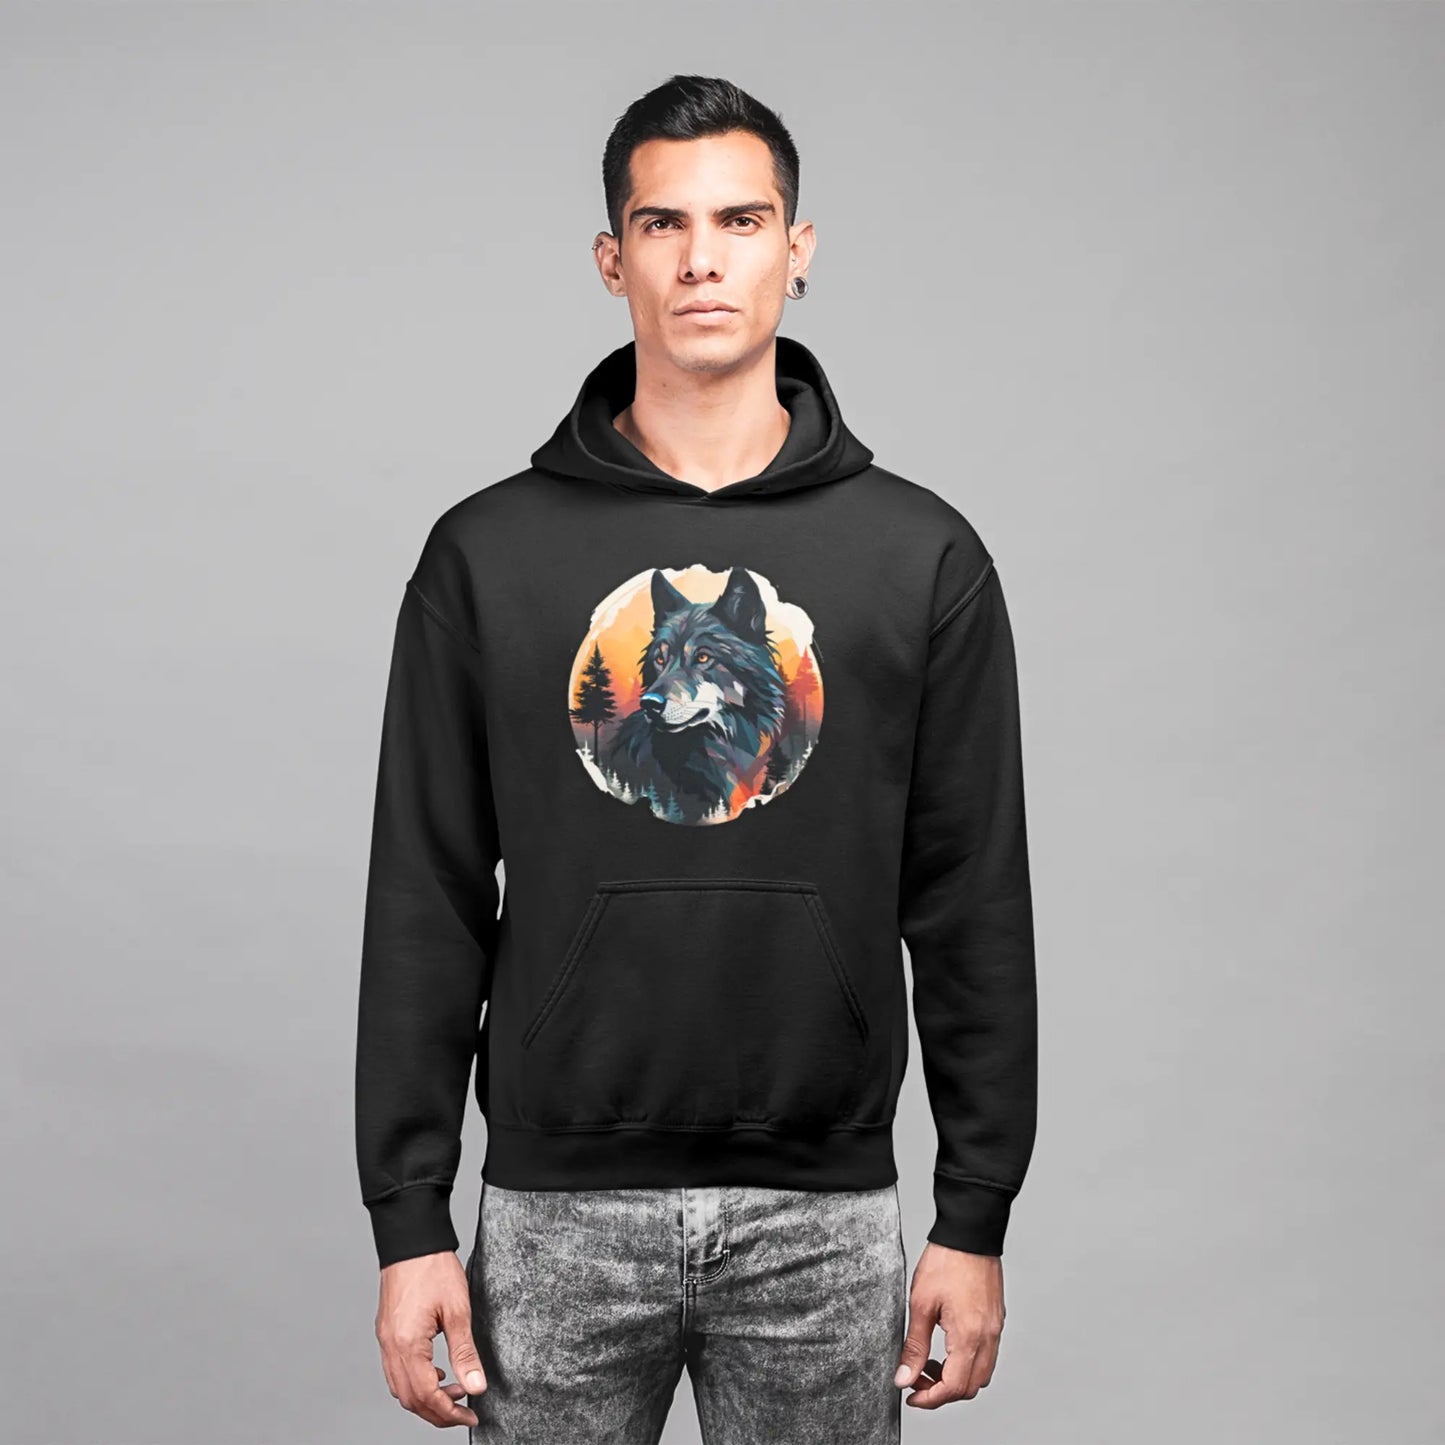 Wolf Graphic Hoodie - Animal Print Hooded Sweatshirt